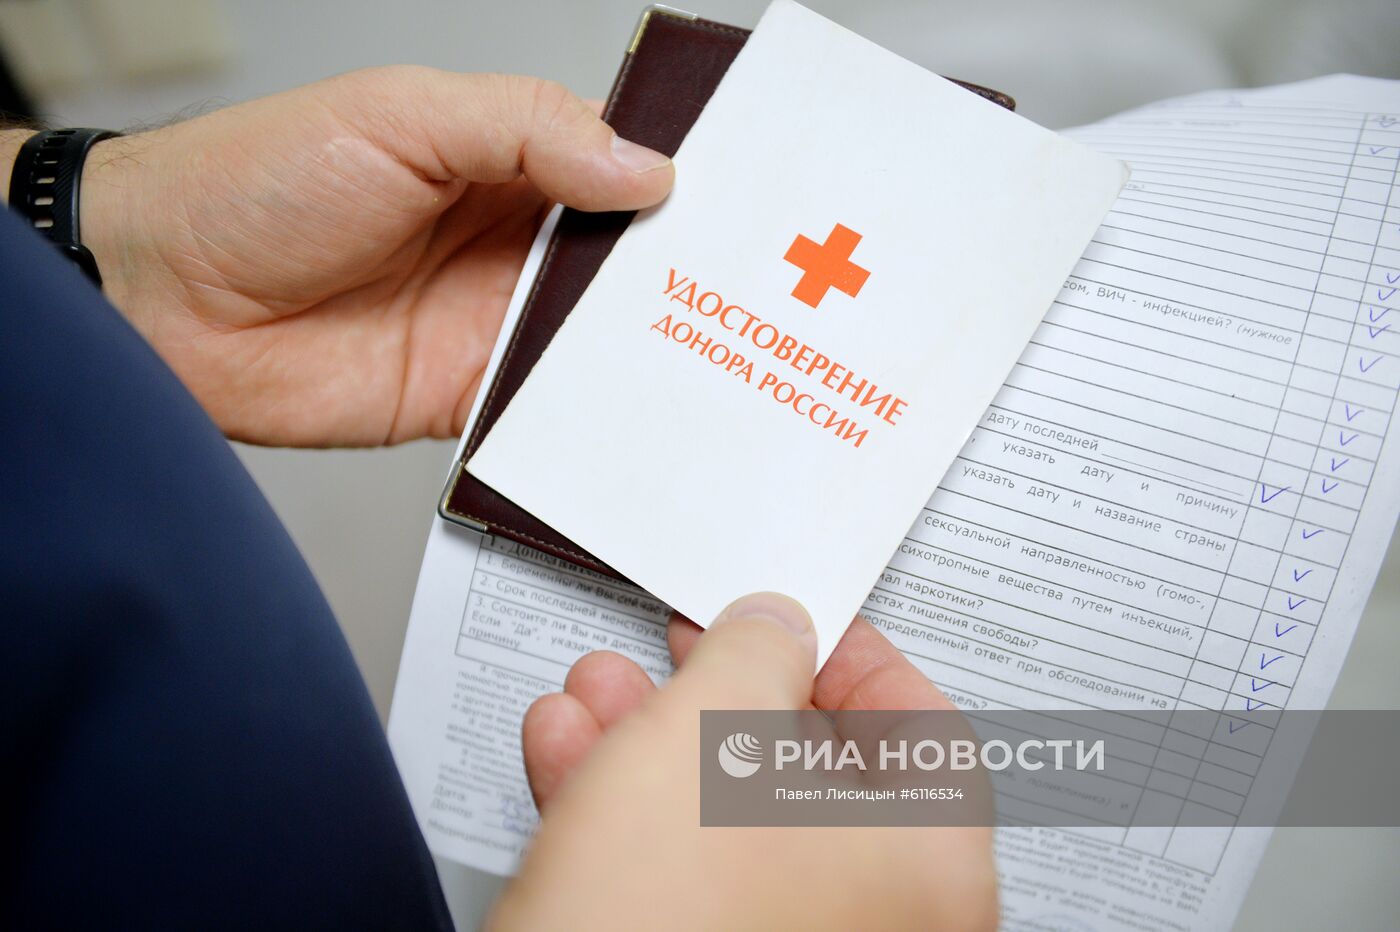 Новогодняя донорская акция "С Новым годом, Служба крови!" в Екатеринбурге